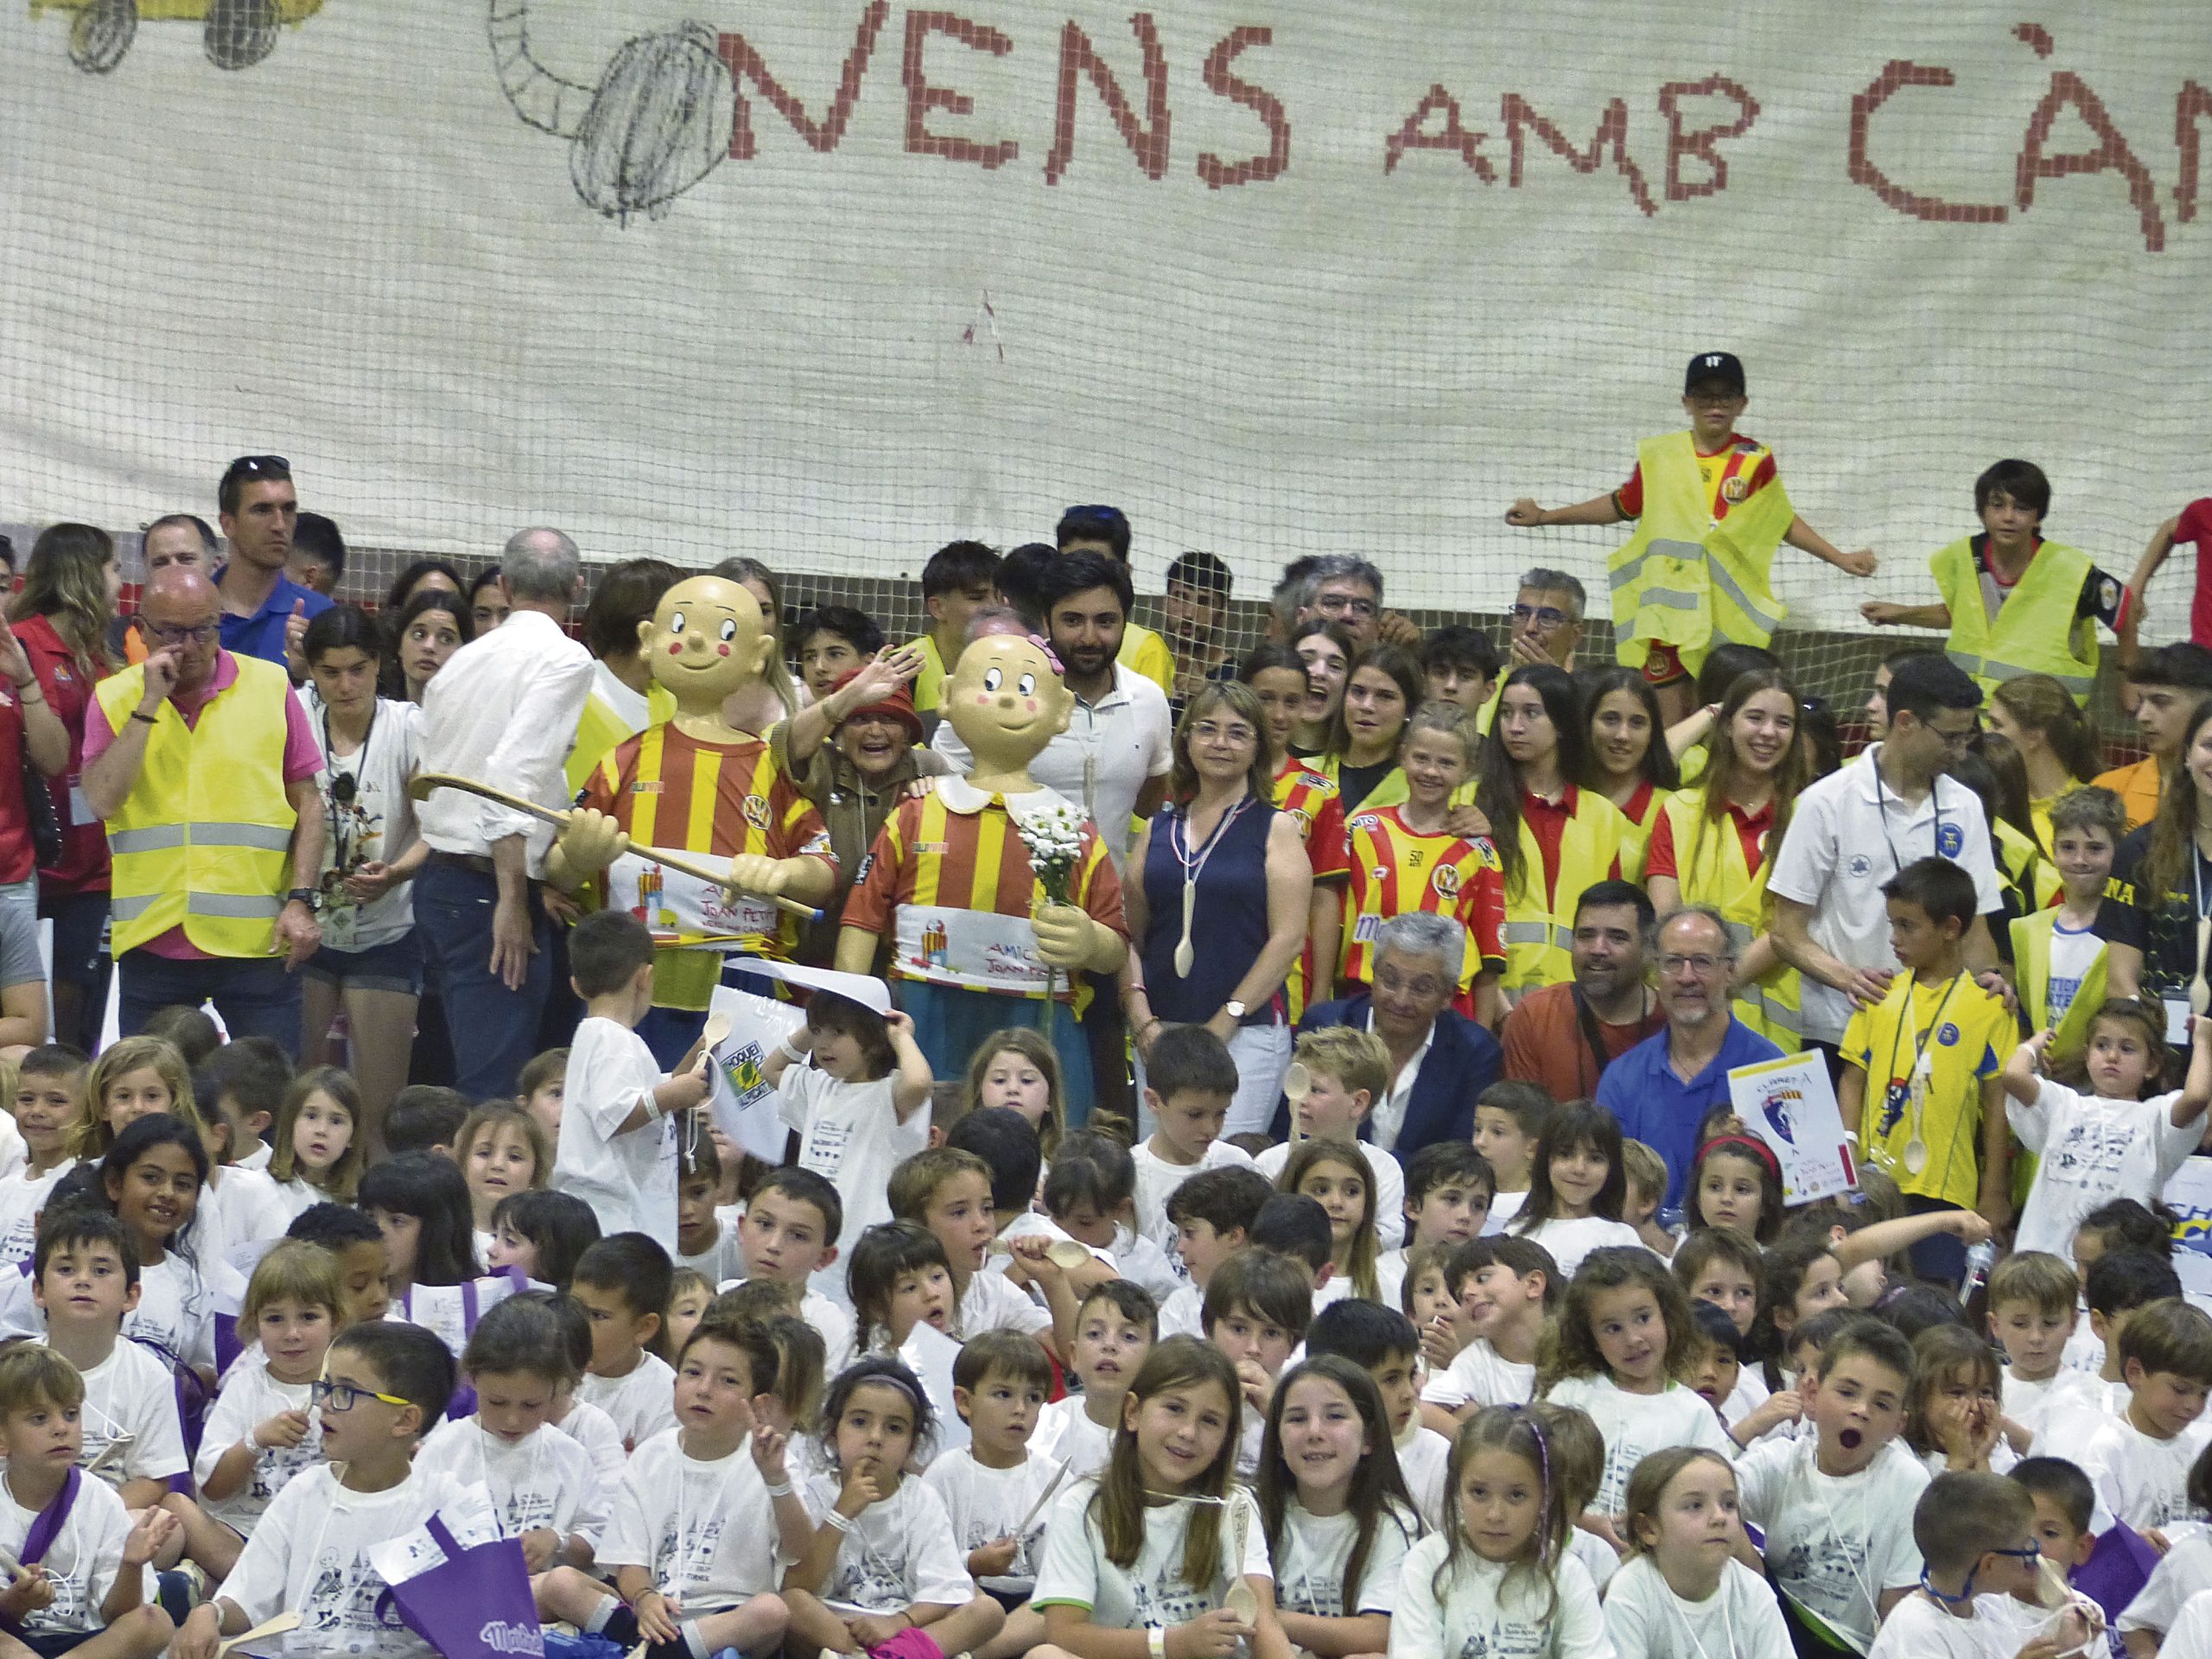 Nens i equips d’arreu de Catalunya van ser a la Festa-Torneig Joan Petit nens amb càncer